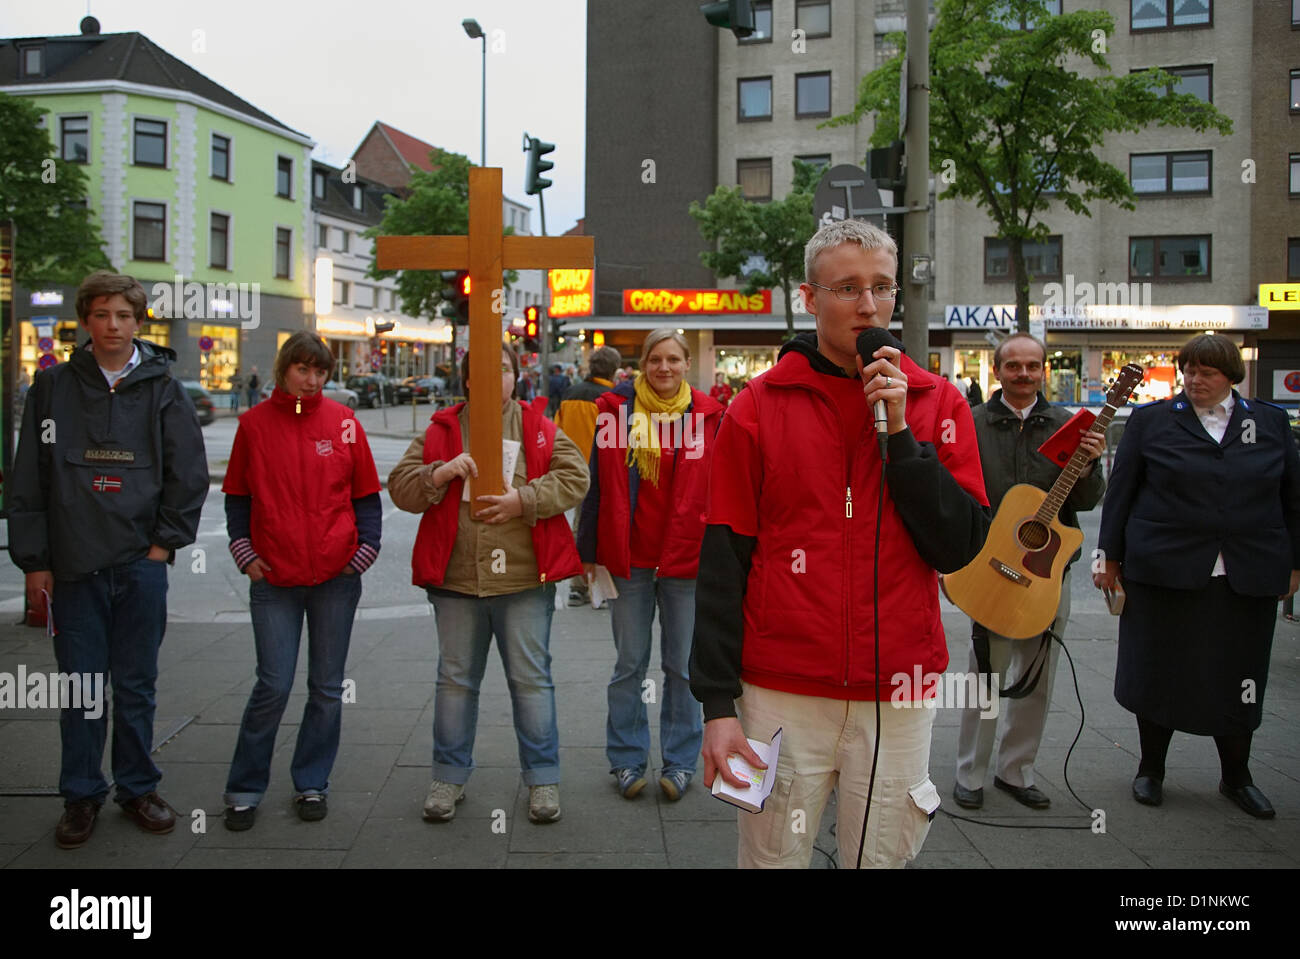 Hambourg, Allemagne, l'Armée du Salut dans une campagne de publicité dans le quartier rouge Banque D'Images